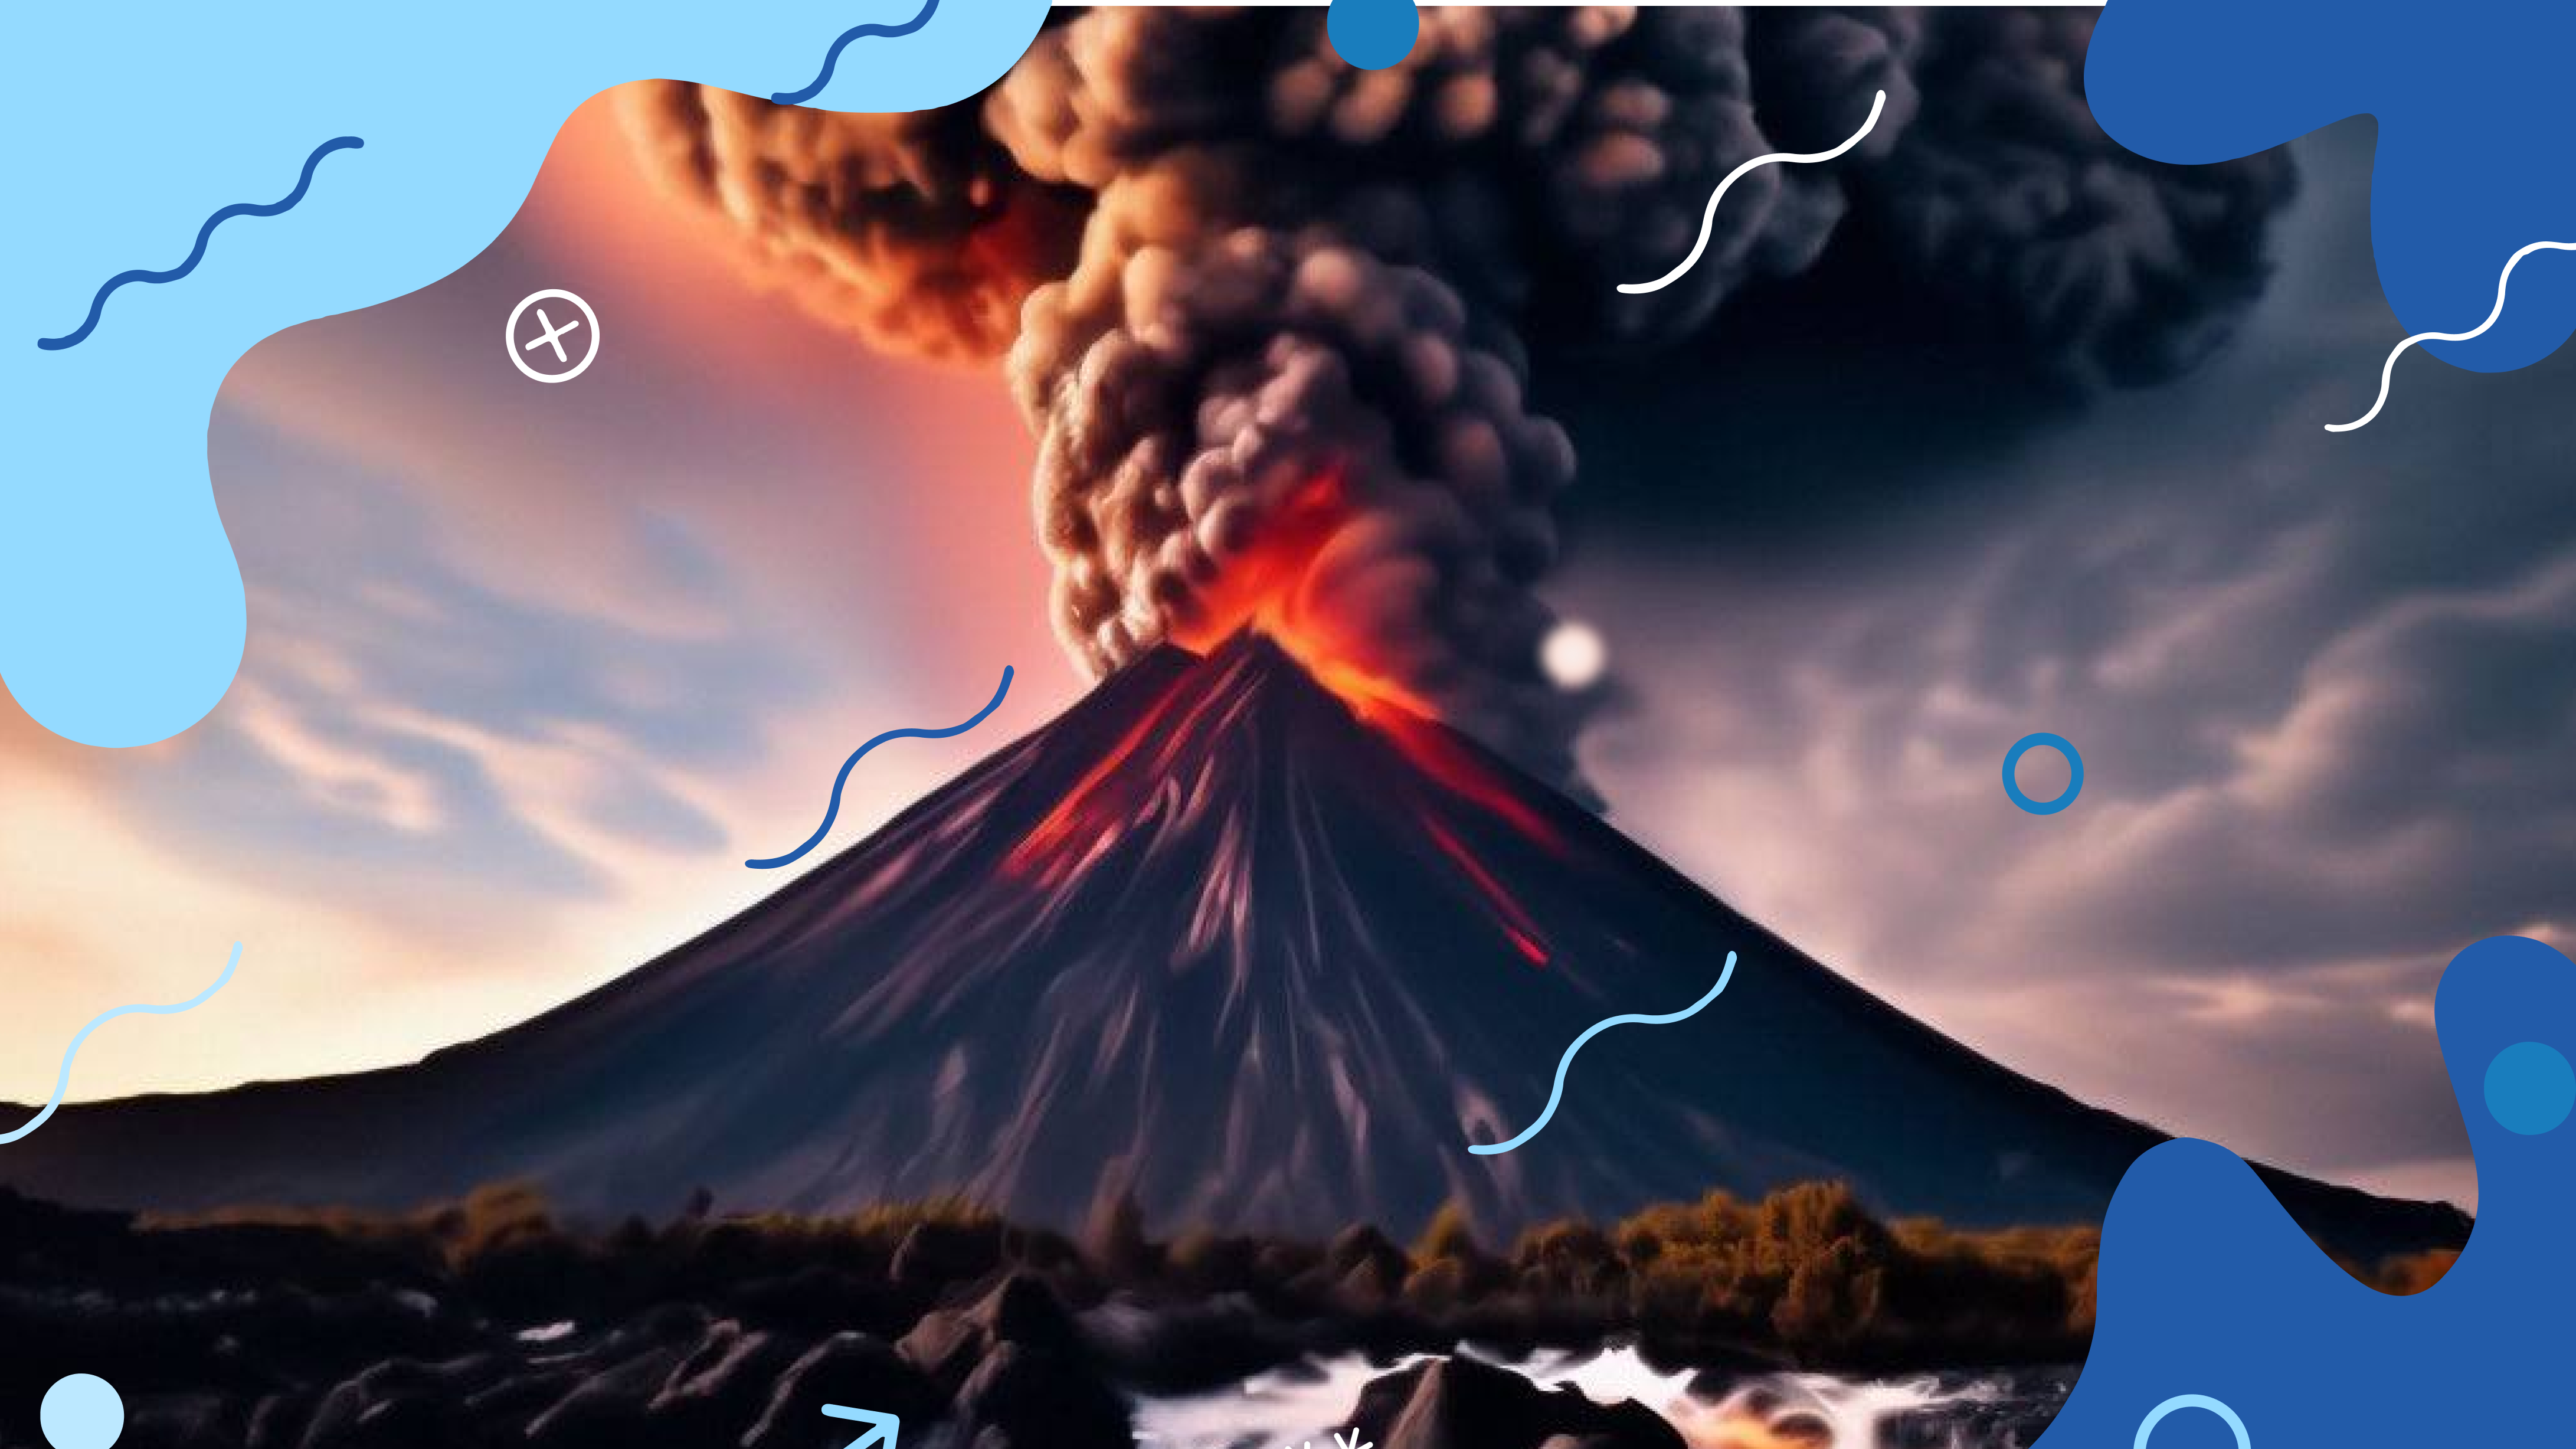 Причины извержения вулканов